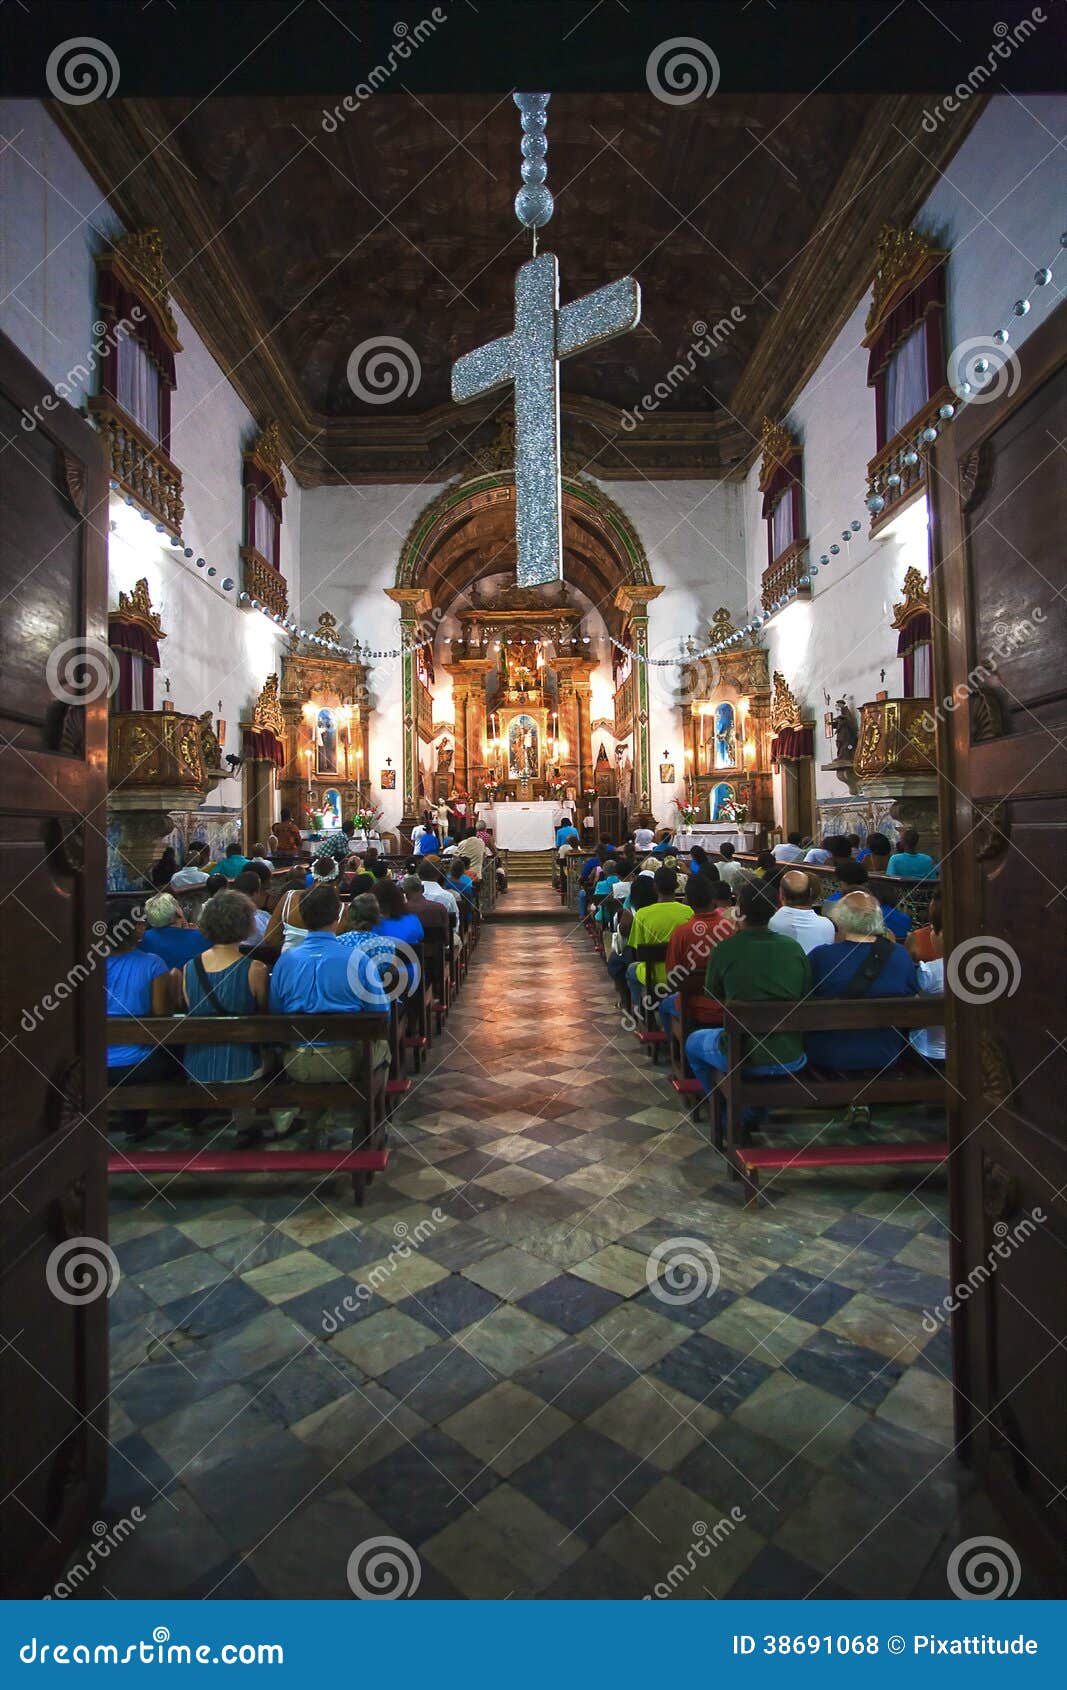 rosario dos pretos church in salvador of bahia